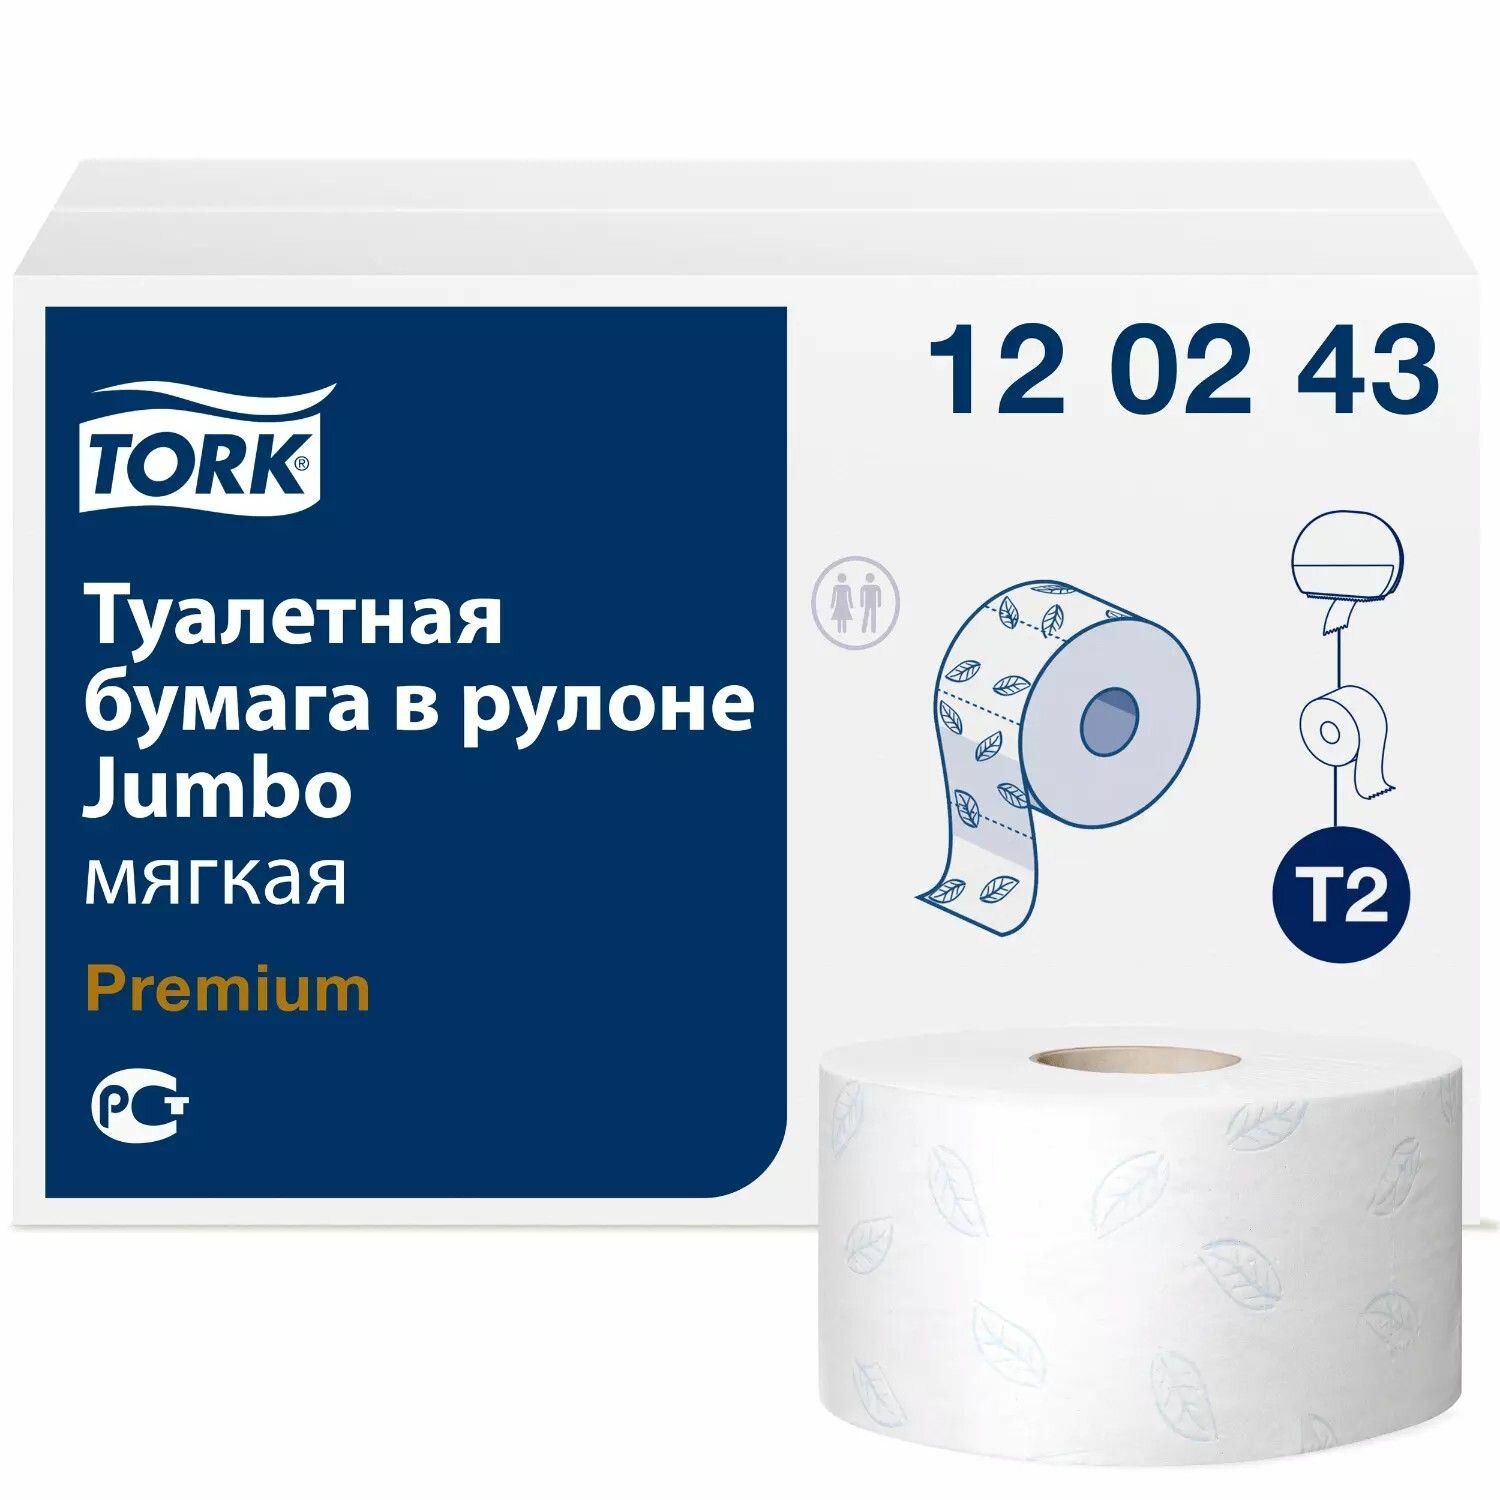 Туалетная бумага Tork Premium, в мини-рулоне мягкая, система T2, 170 м, 2 сл, белая, 1 рулон (арт: 120243)